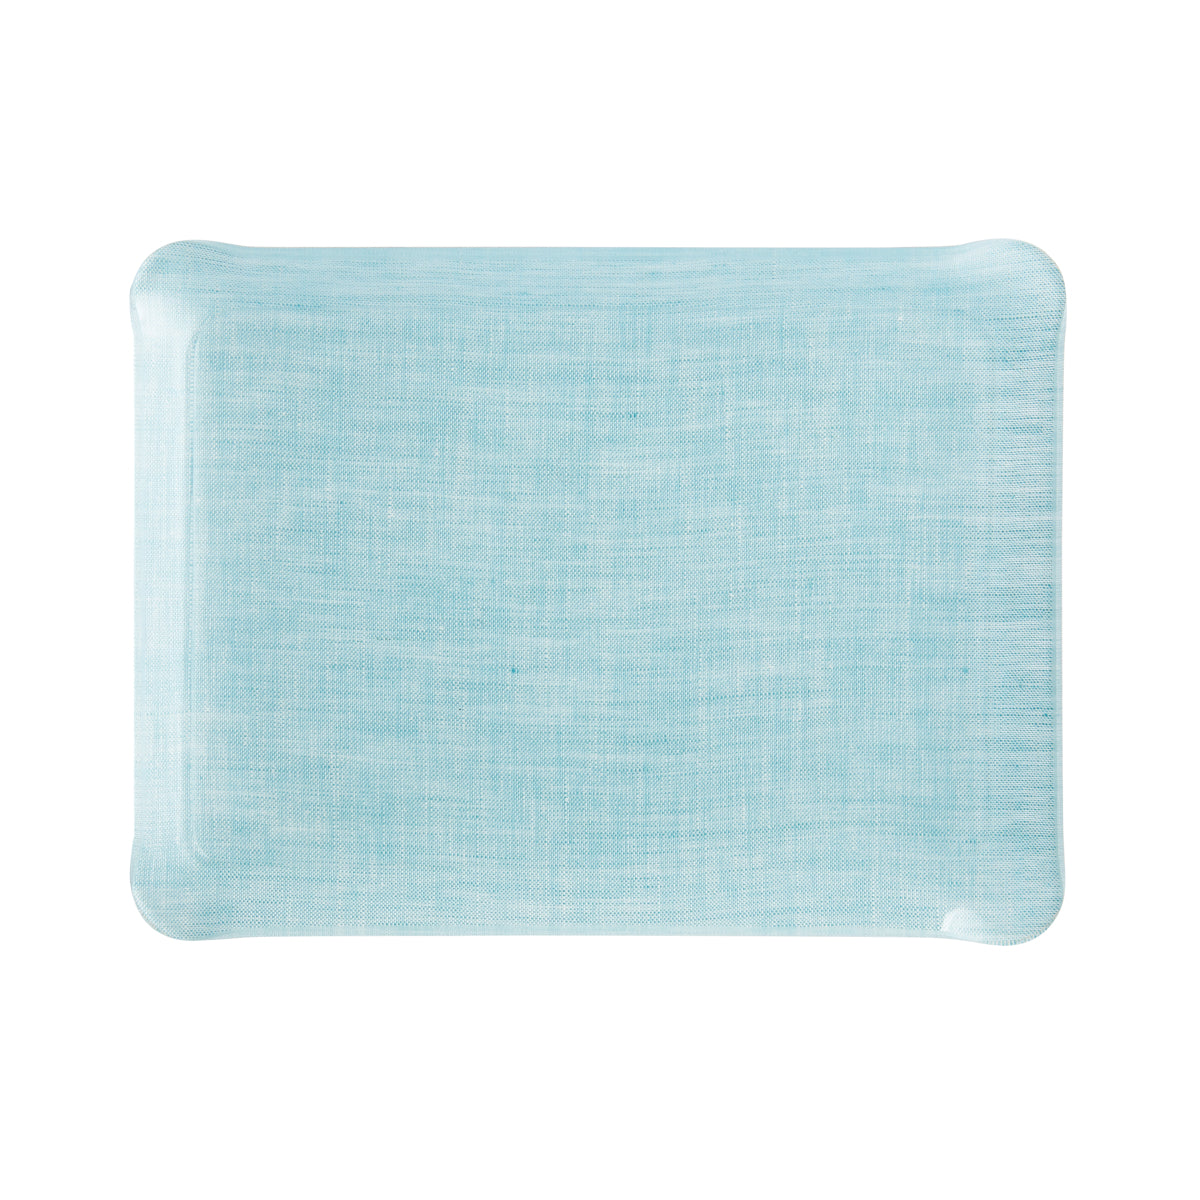 Nina Campbell Fabric Tray Small - Aquamarine